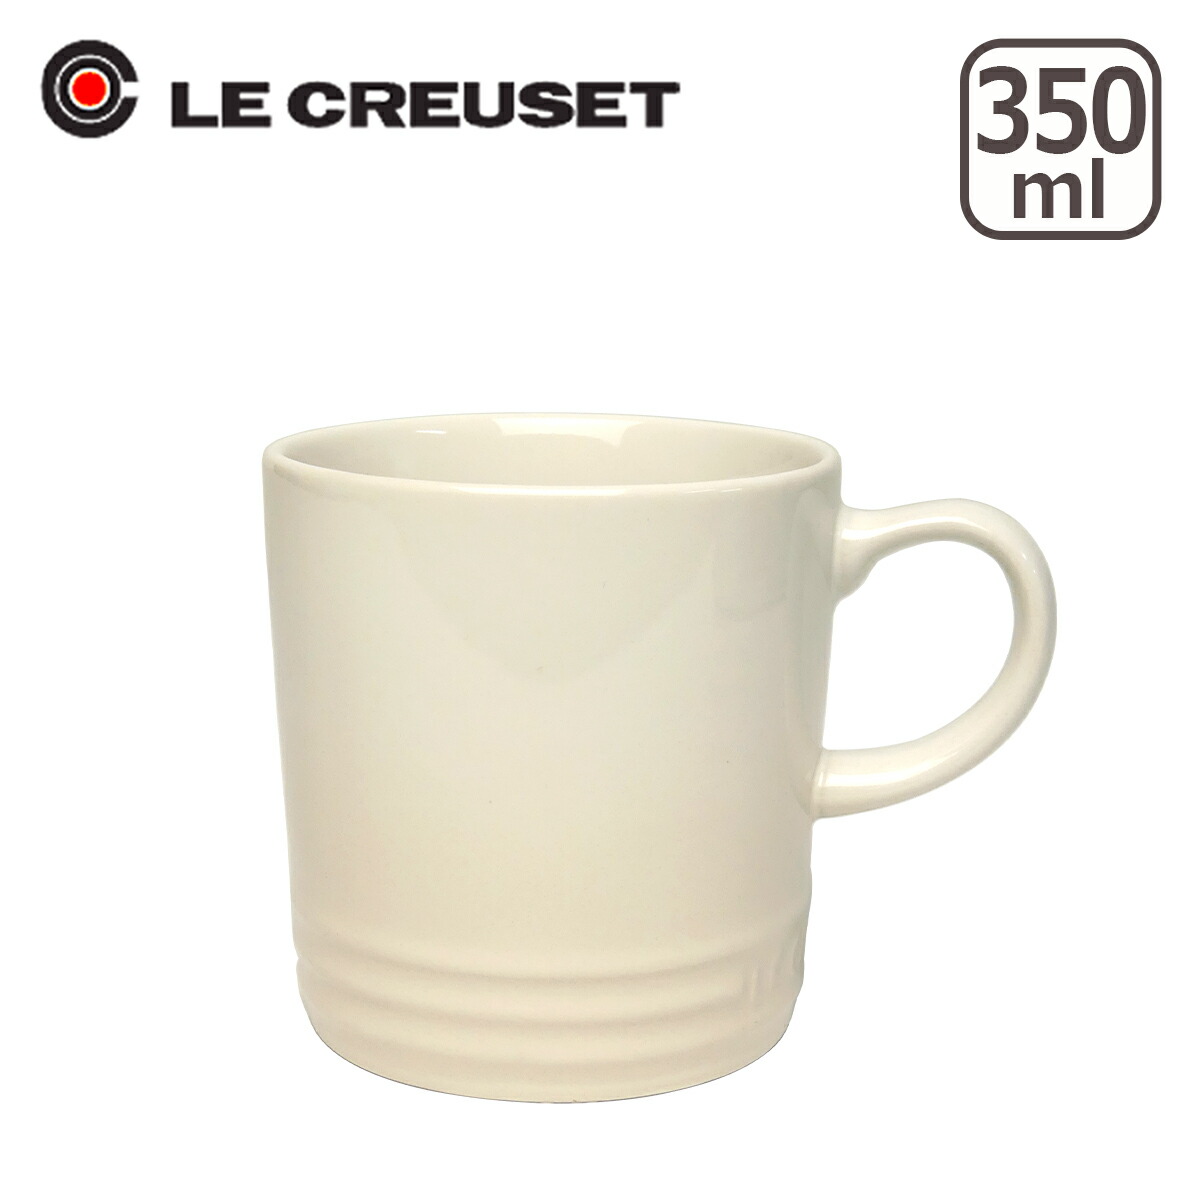 ル・クルーゼ マグカップ 350ml Le Creuset